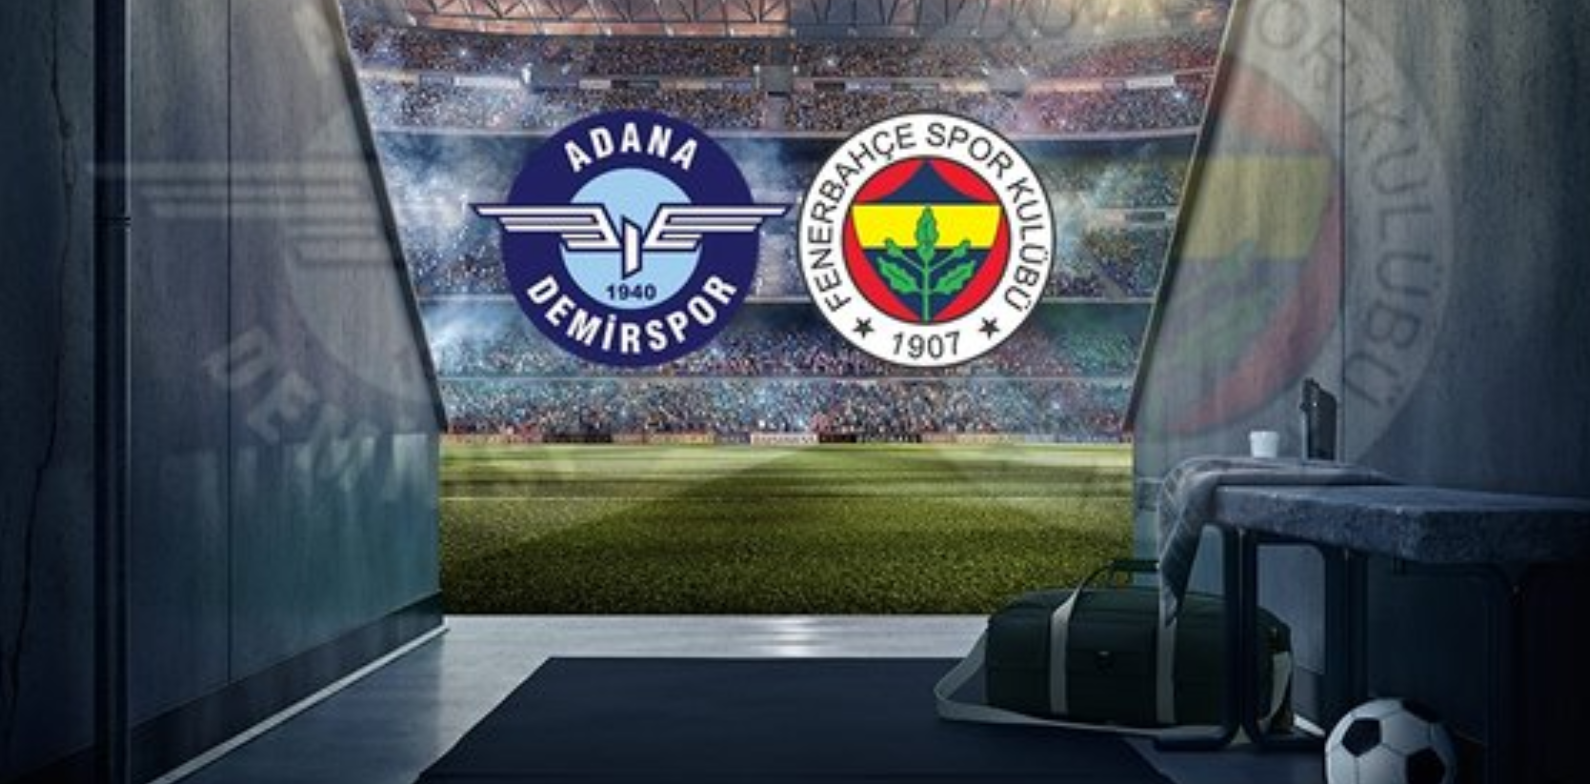 Adana Demirspor Fenerbahçe Maçı canlı izle, Şifresiz Bein sports bedava maçı izle